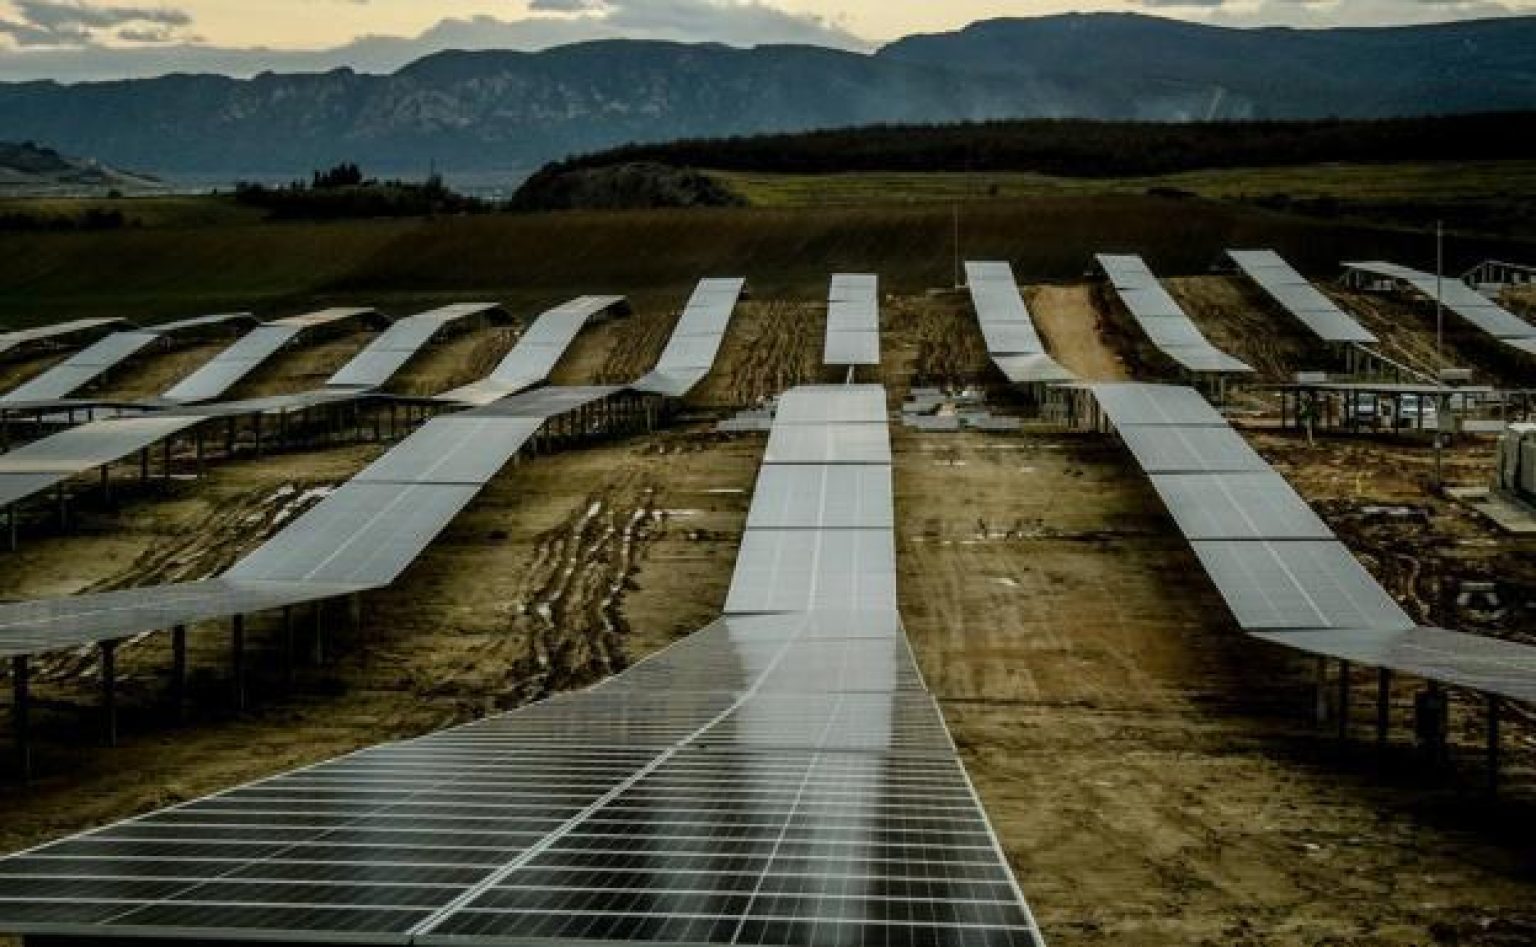 Mondragon Assembly desarrollará una línea de fabricación de módulos fotovoltaicos en Rumanía